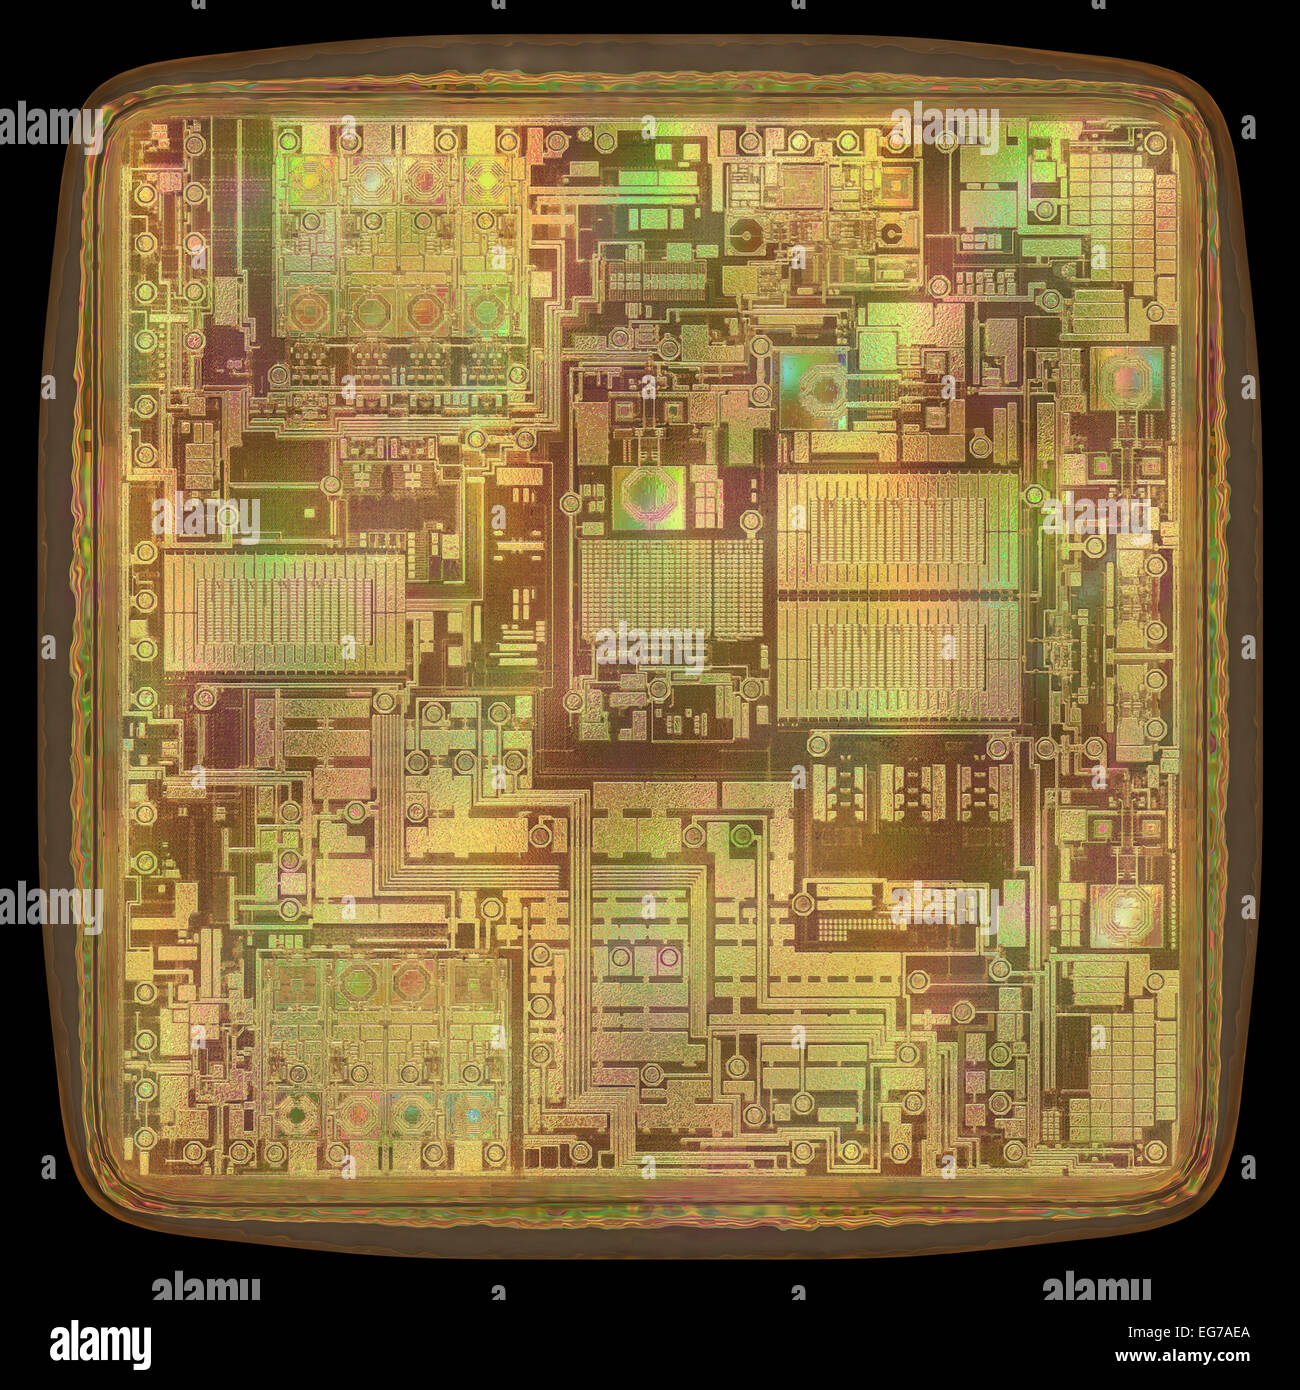 Concepto de imagen 3D de una expansión del núcleo del microchip. Foto de stock